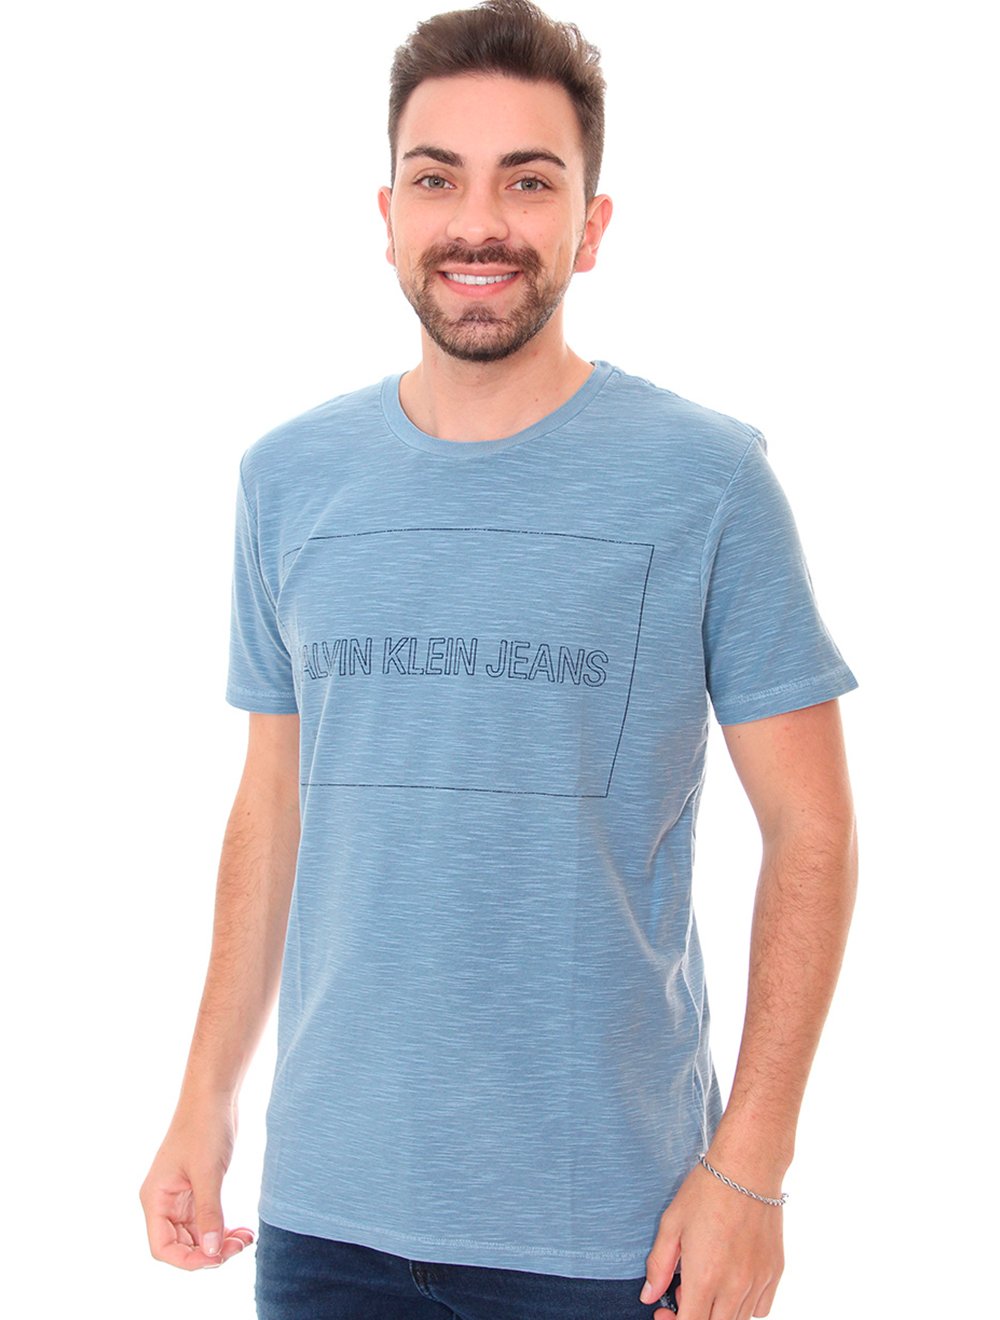 Camiseta Calvin Klein Jeans Logo Azul-Marinho - Compre Agora